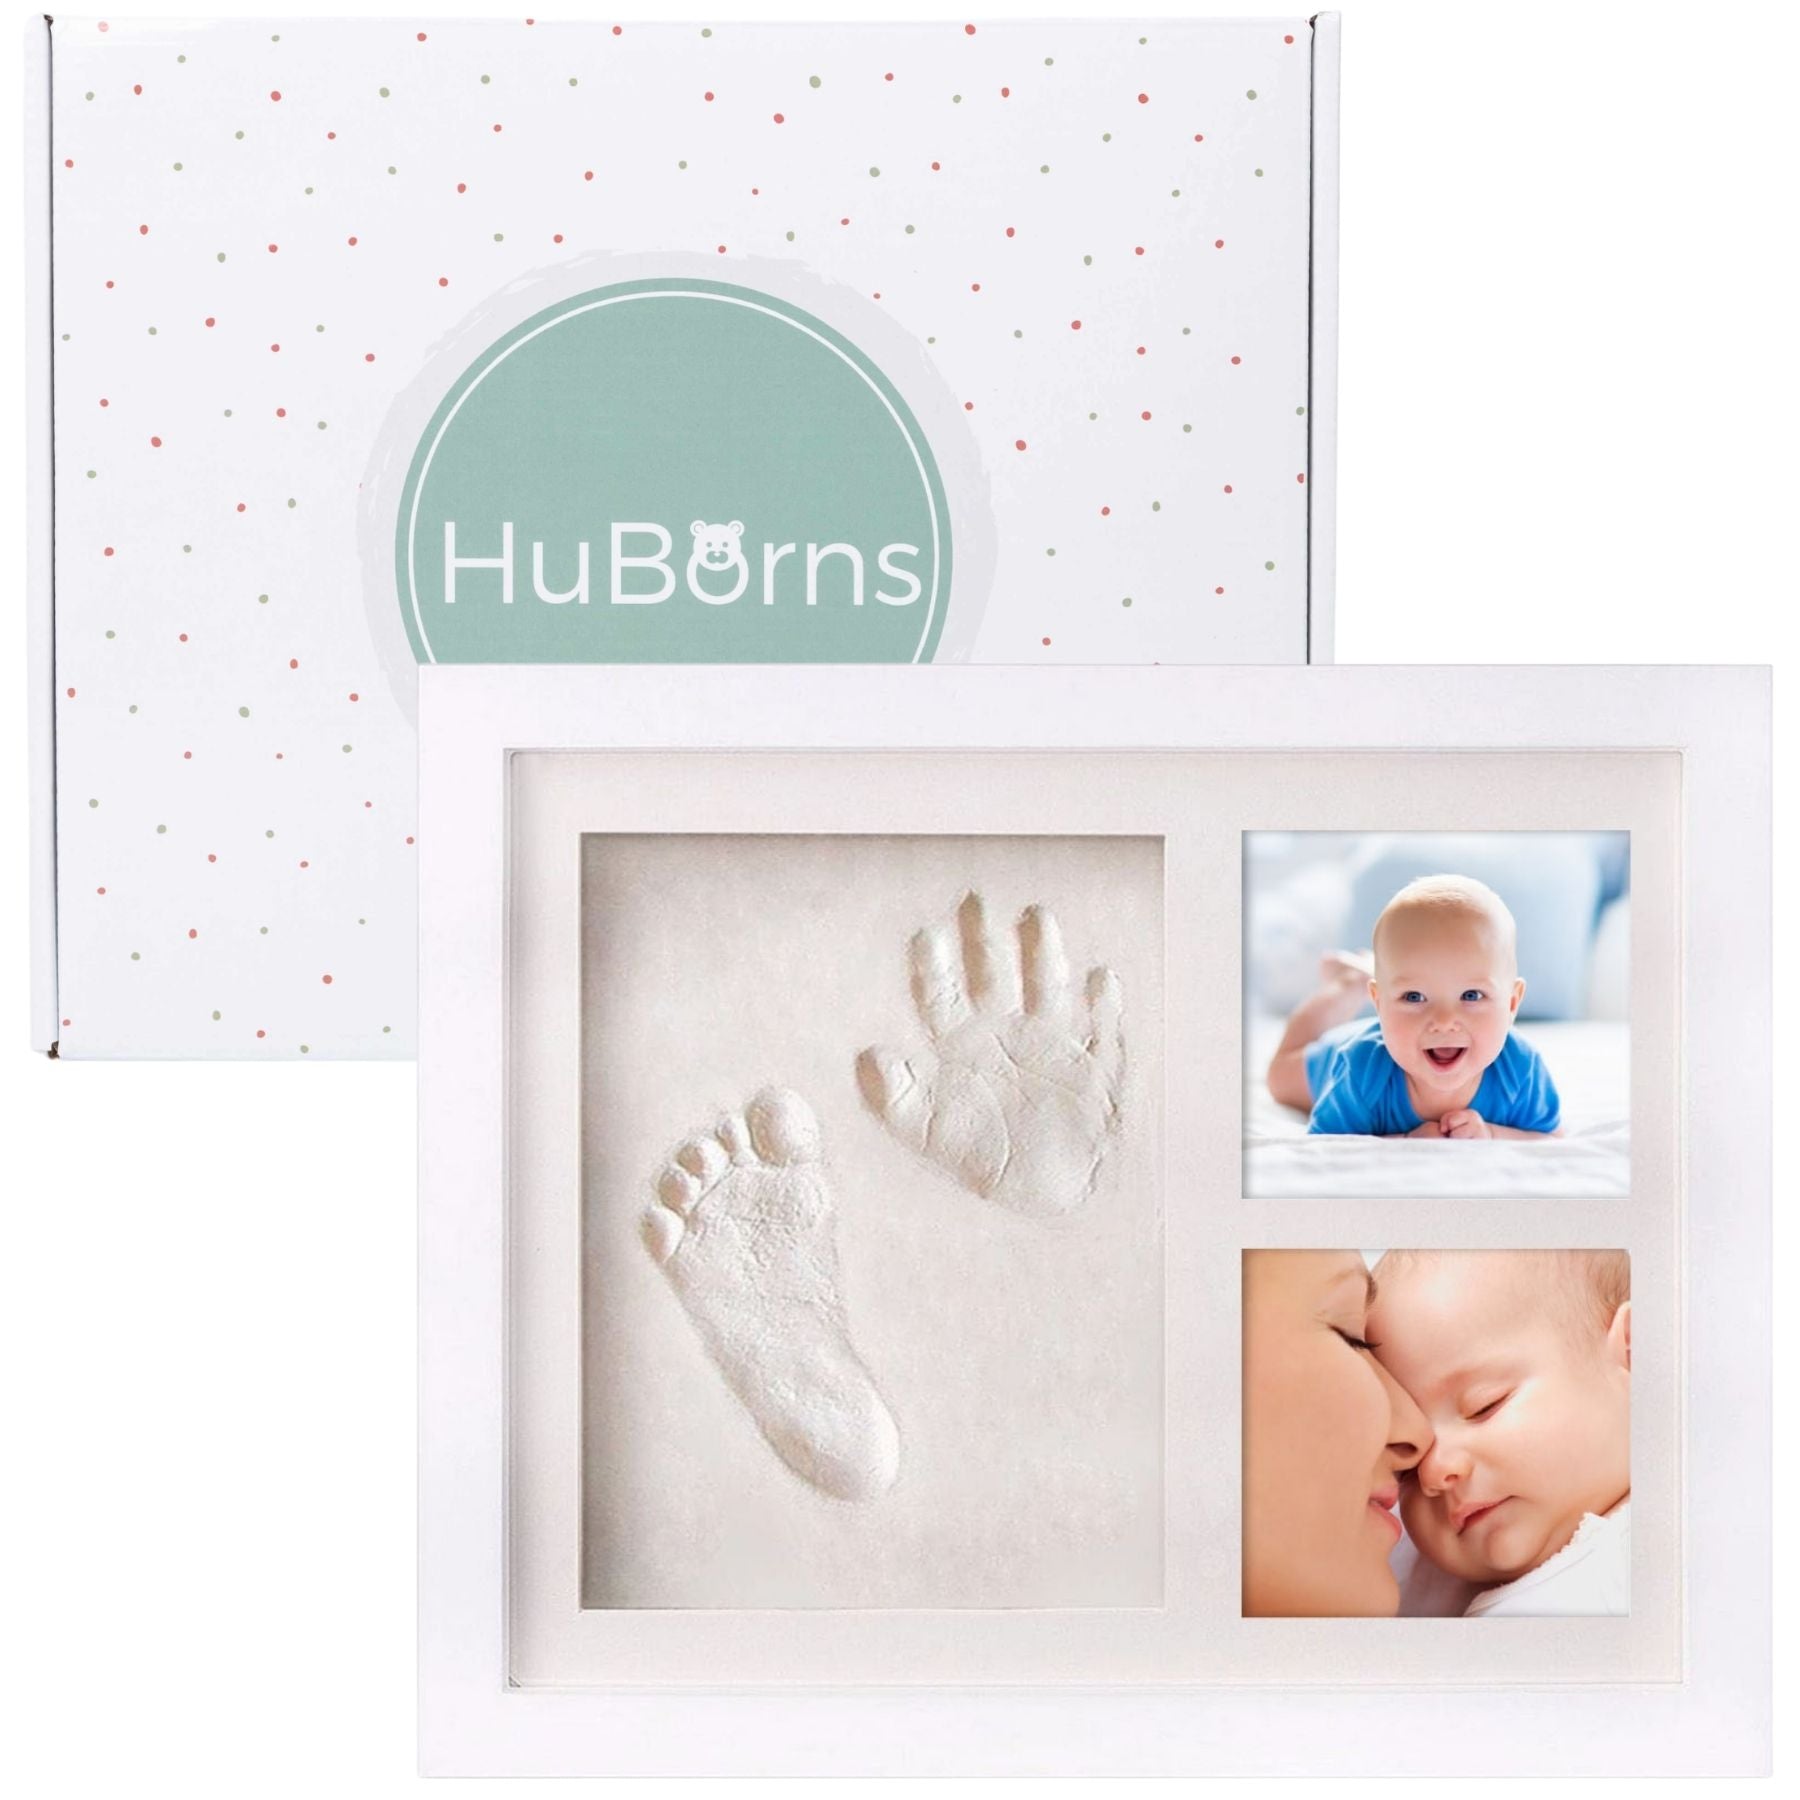 Marco huellas bebé, regalo original para recién nacidos I HuBorns